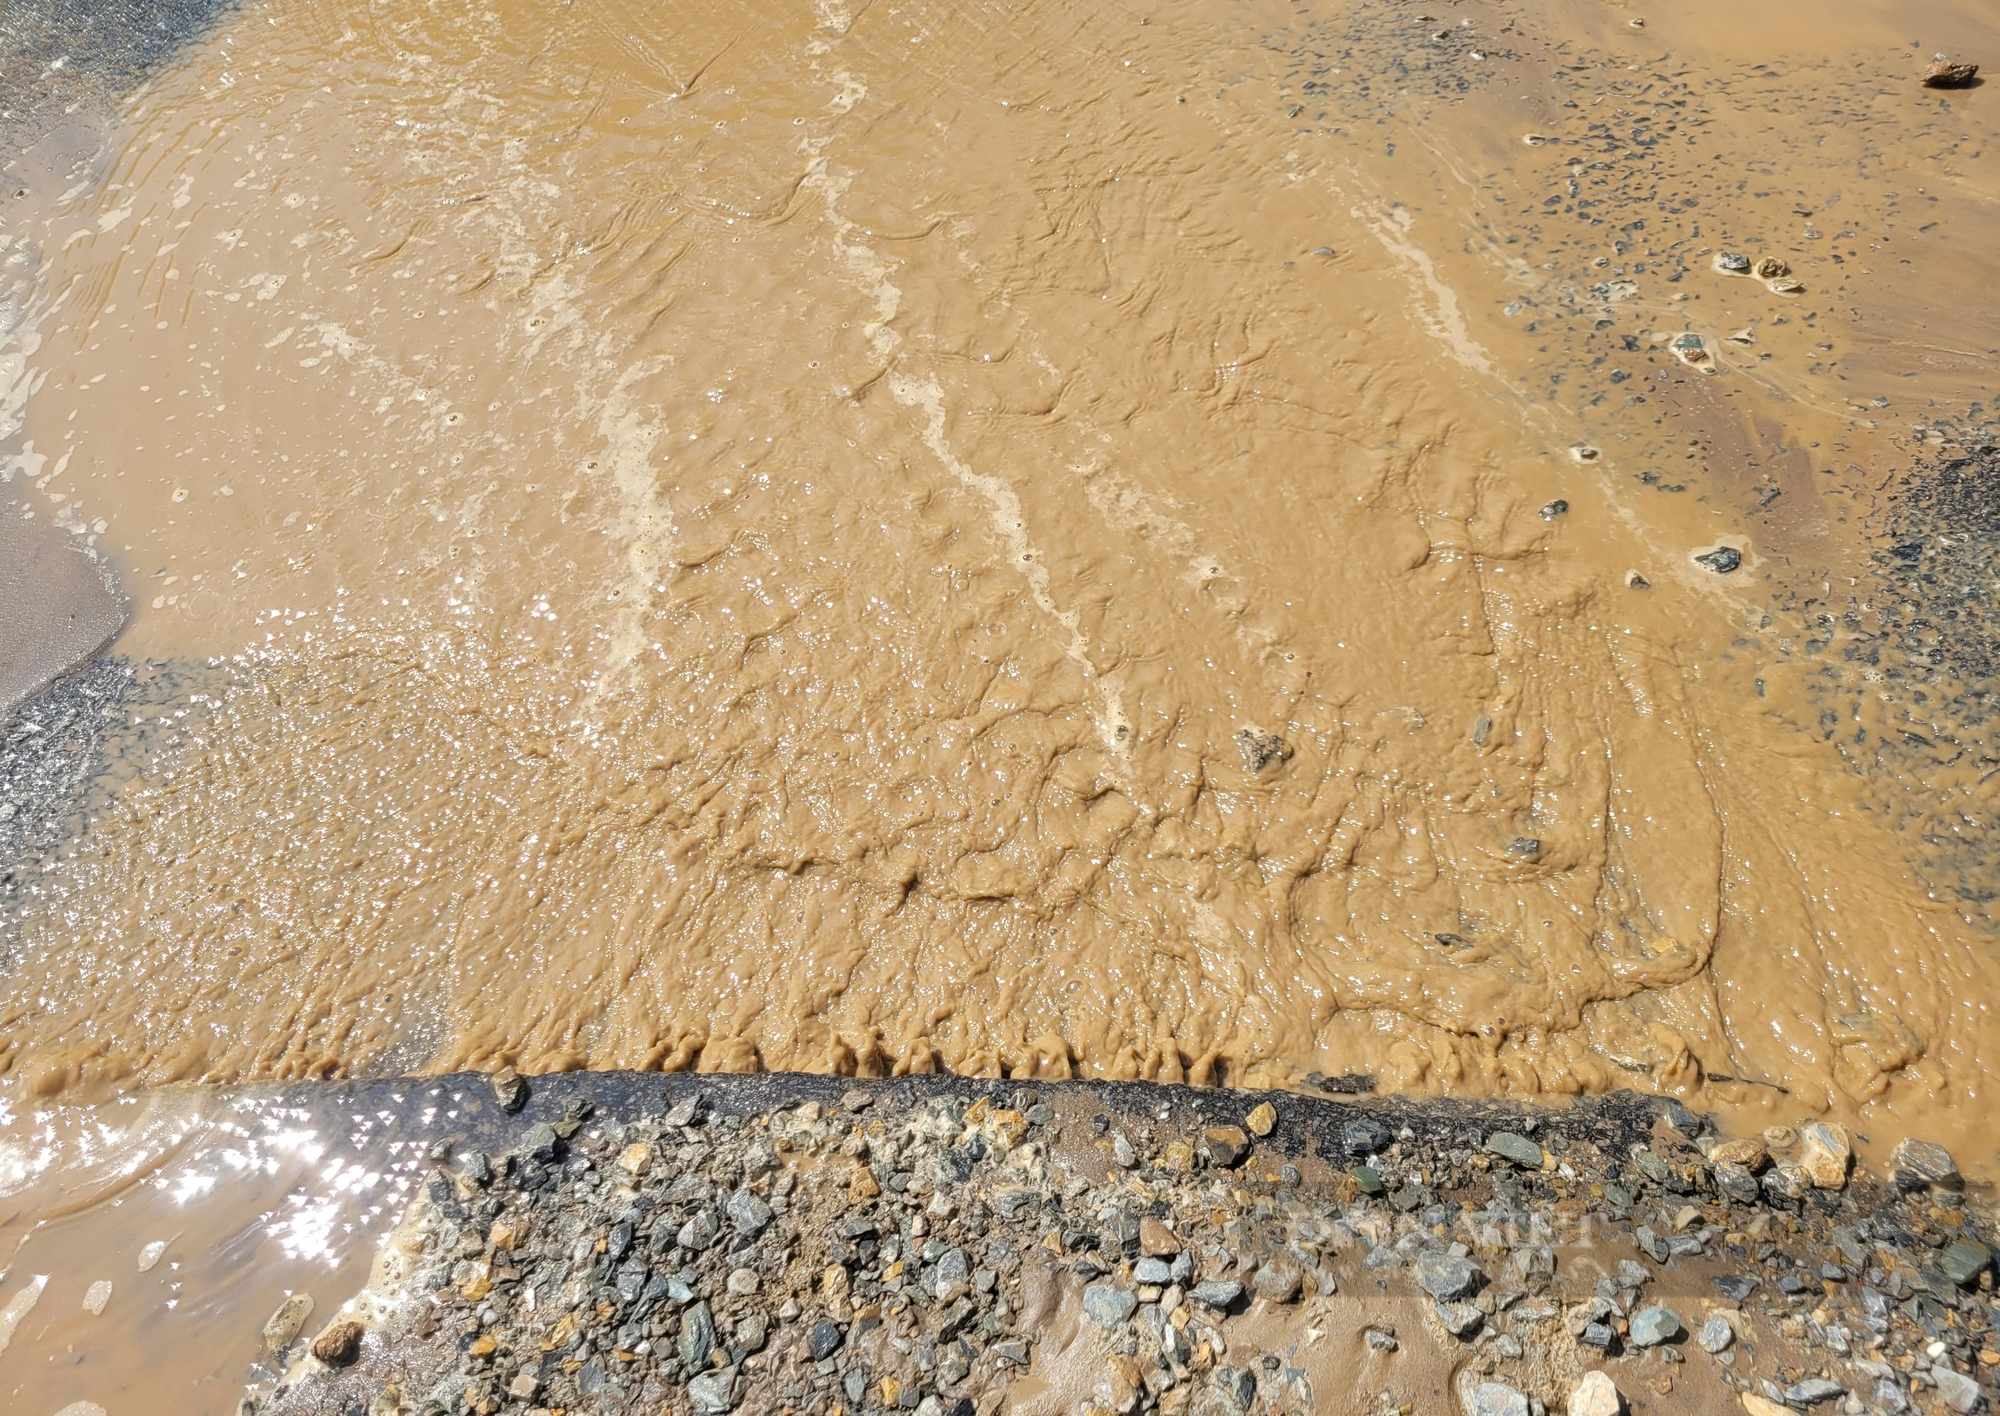  Nước tràn lênh láng trên mặt đường vừa thi công đường ống ở quận Hà Đông - Ảnh 3.